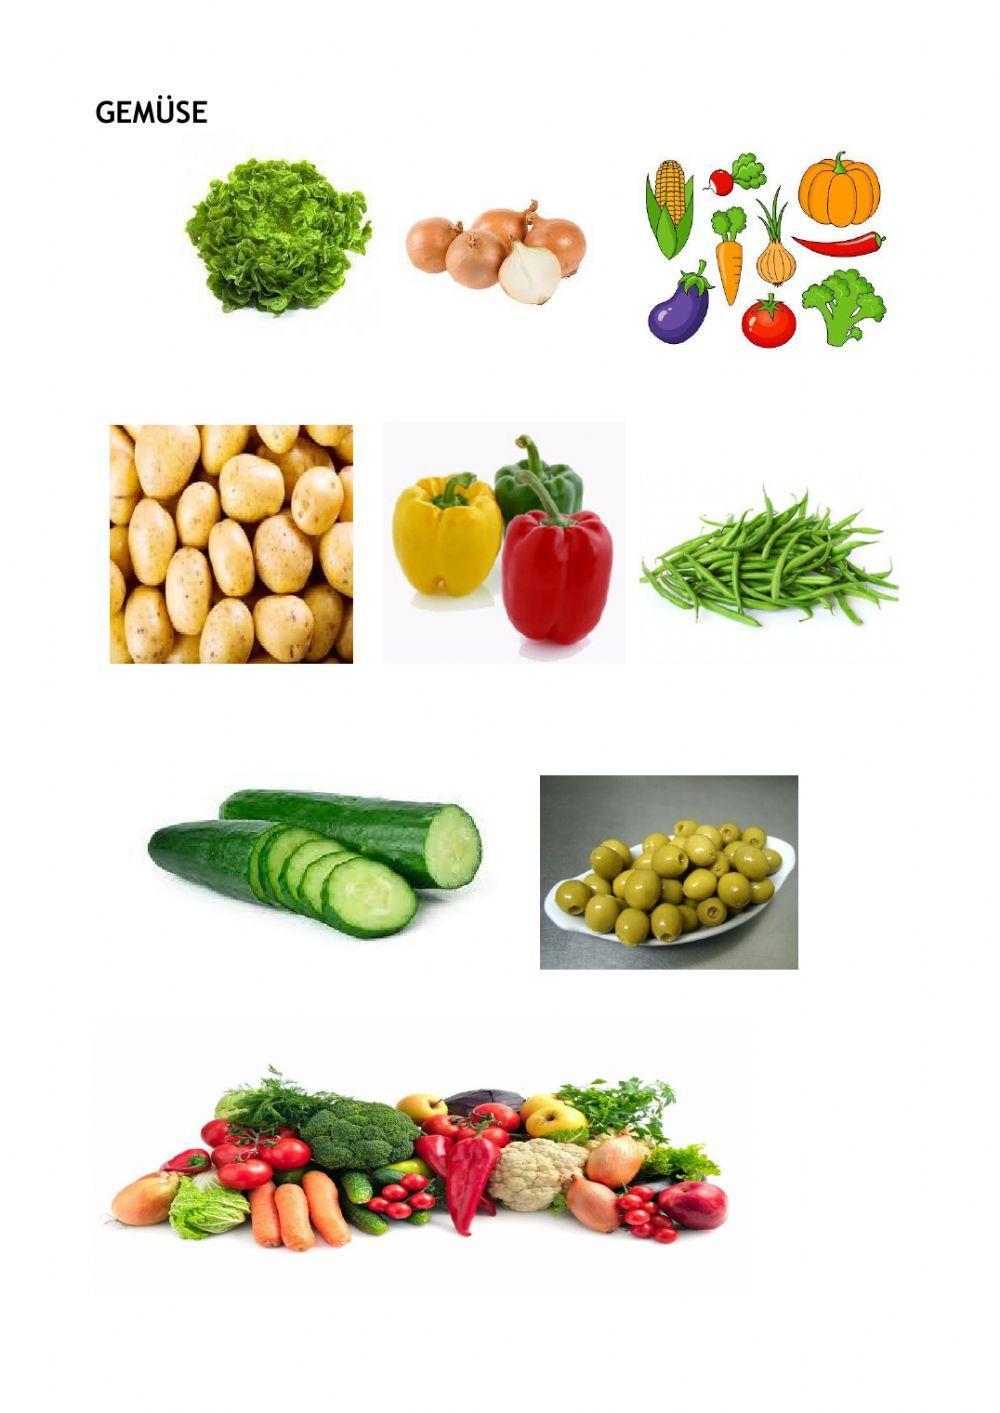 ESSEN UND TRINKEN -Obst, Gemüse, Getränke 